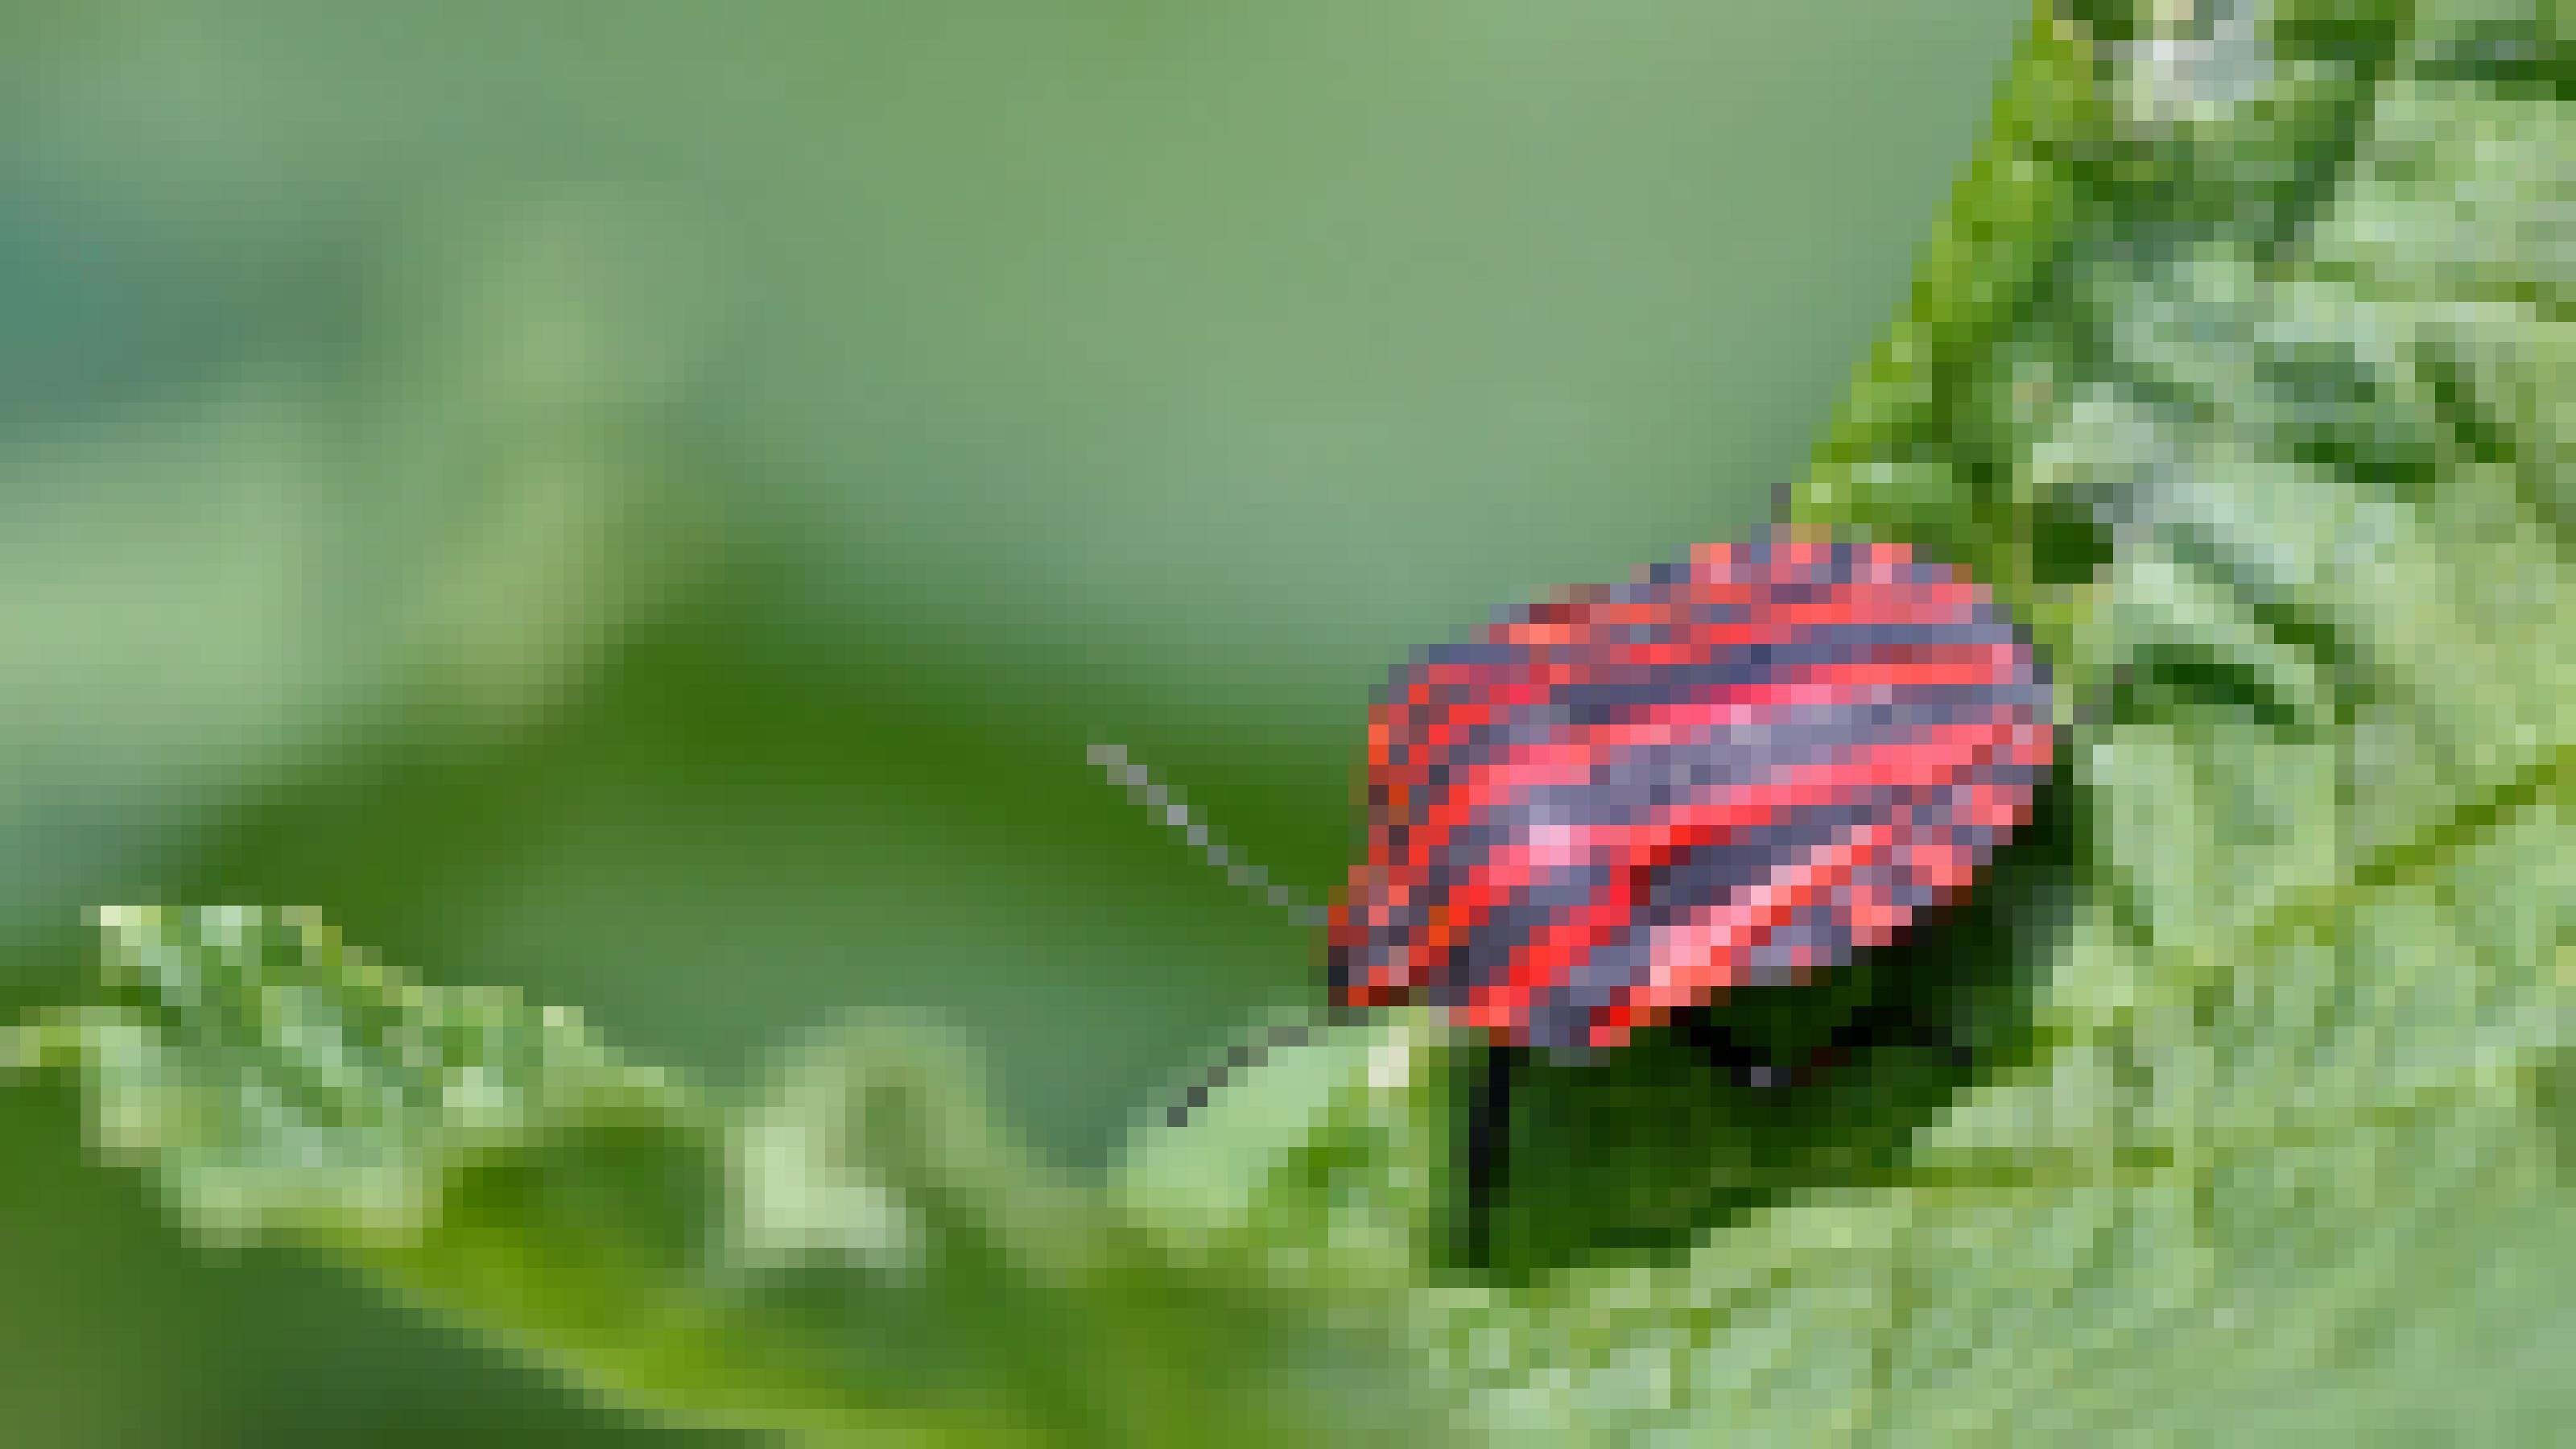 Ein rot-schwarz gezeichnetes Insekt sitzt auf einem grünen Blatt